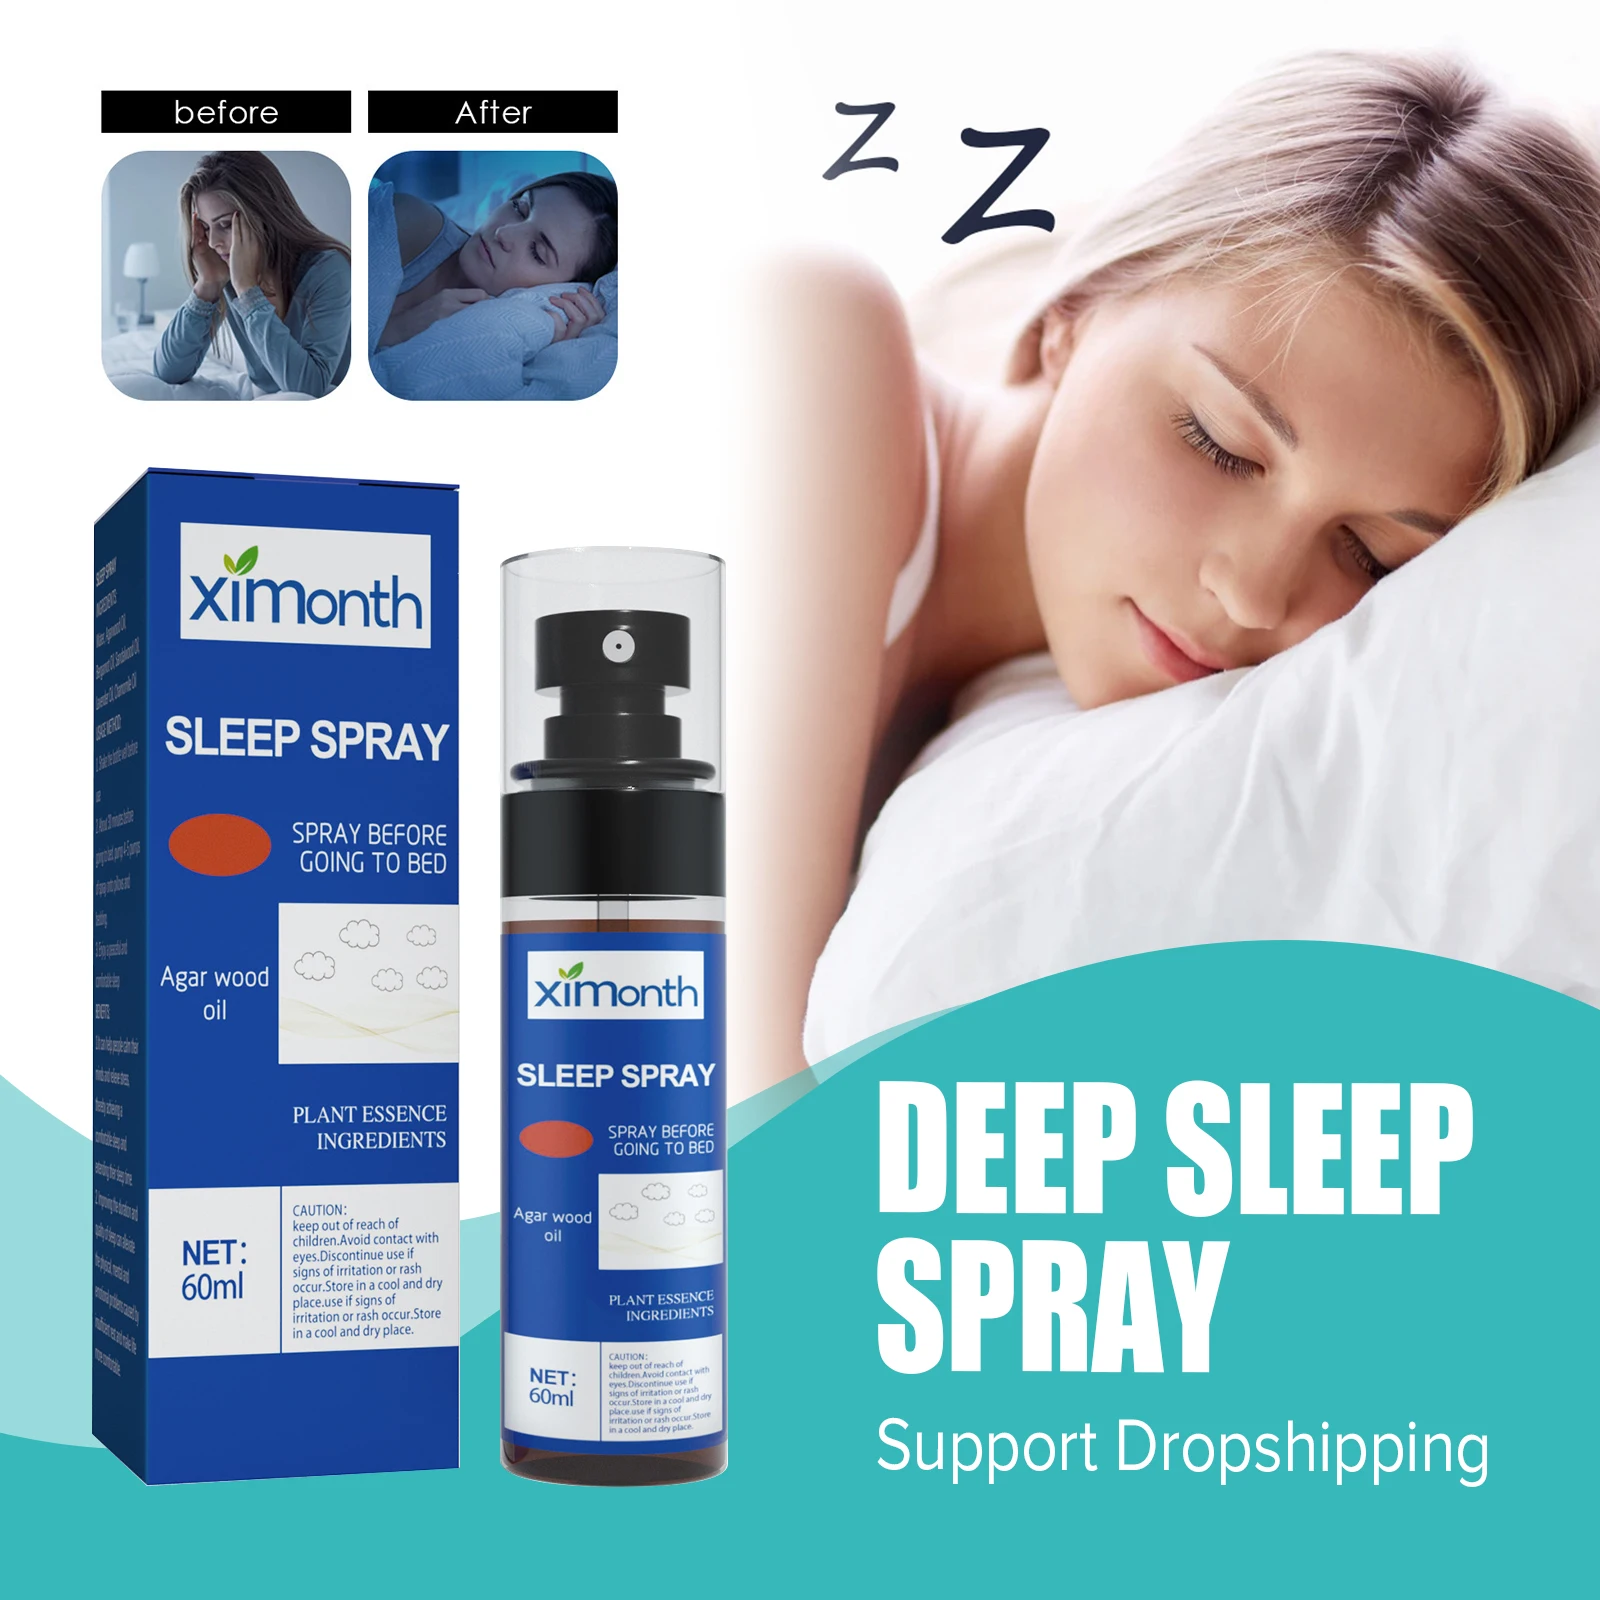 

Лаванда помощь при сне жидкость для улучшения бессонницы снятие стресса Расслабление анти-беспокойство искусственный туман спрей для быстрого глубокого сна